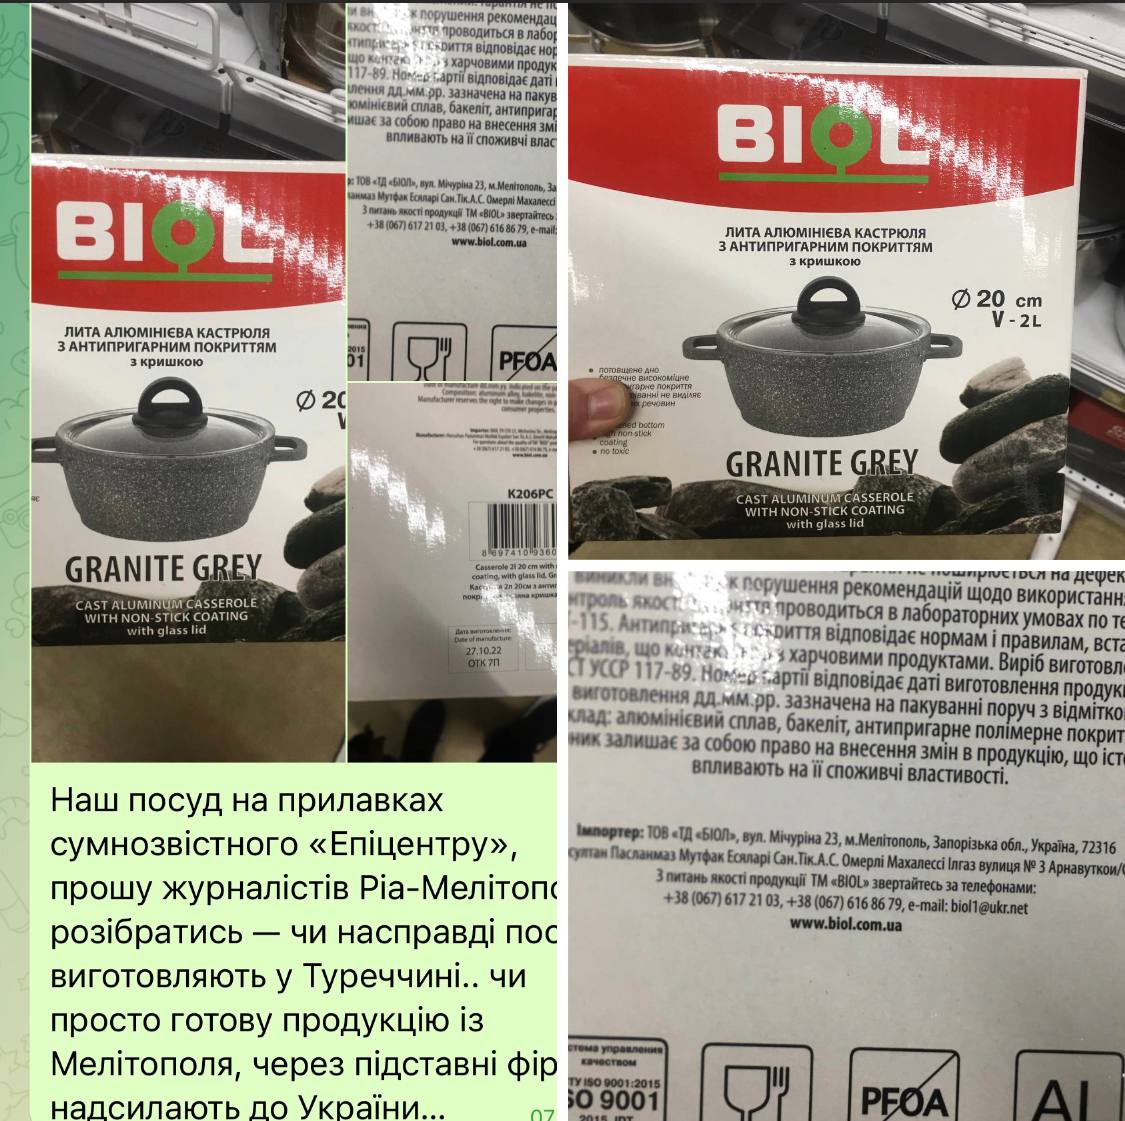 В сети украинских супермаркетов «Эпицентр» появилась посуда мелитопольской торговой марки «Биол», изготовленная в Турции.